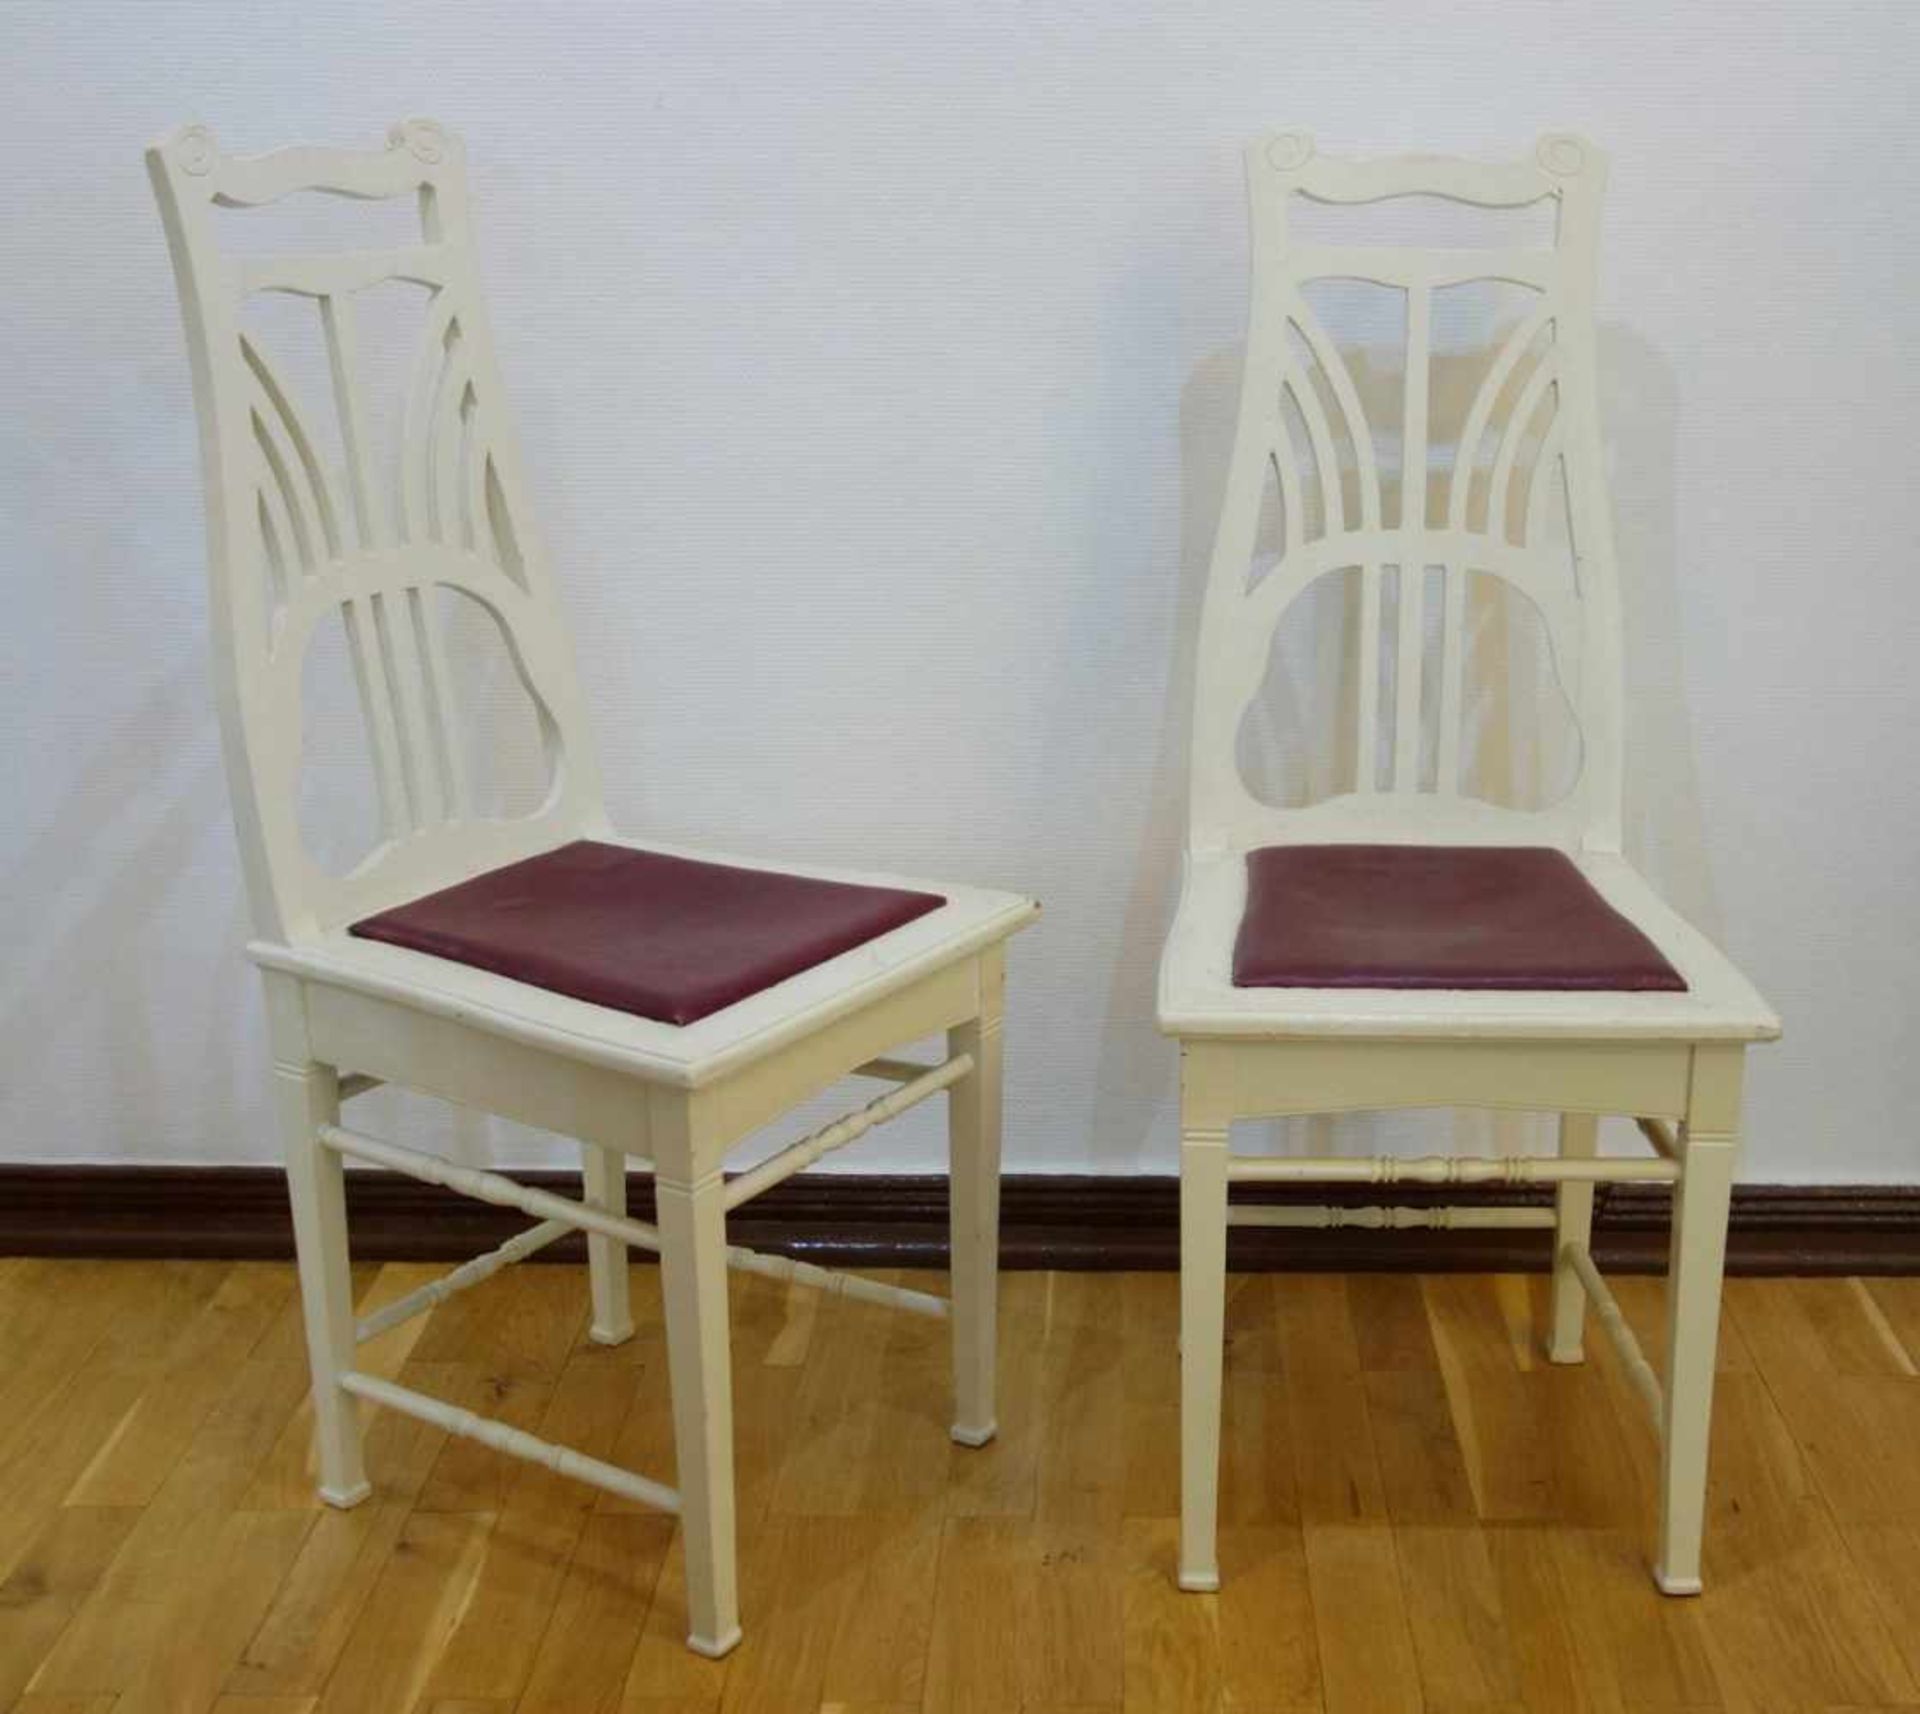 2 Stühle, wohl Darmstadt, Jugendstil um 1910 weiß gelackt, erneuerte Kunstledersitzfläche,